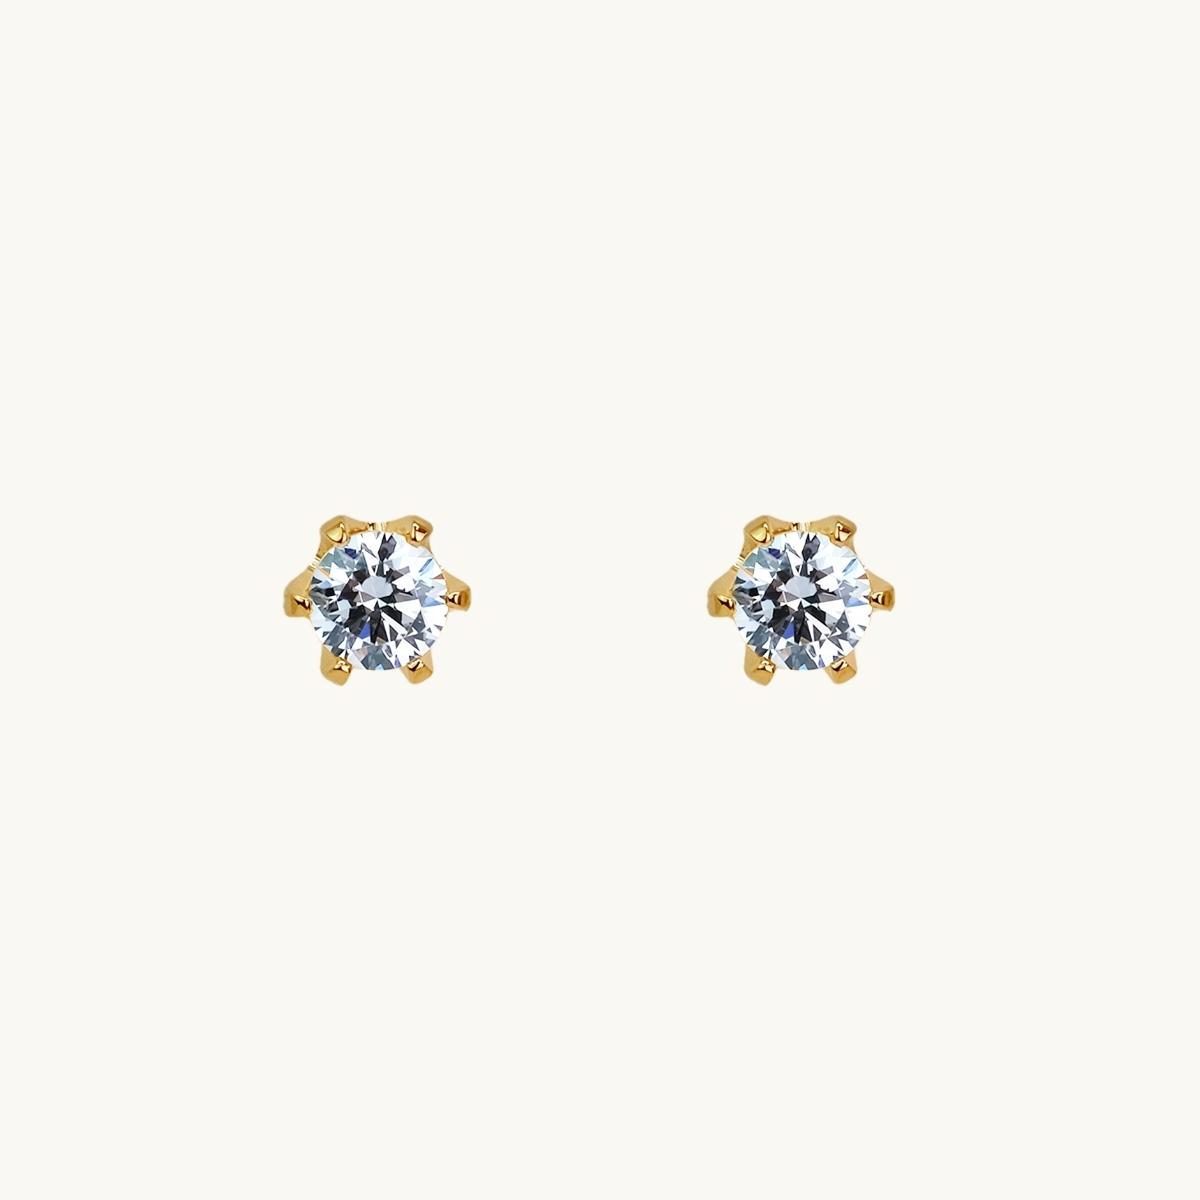 Pin earrings, gold, diamond in claw, princess